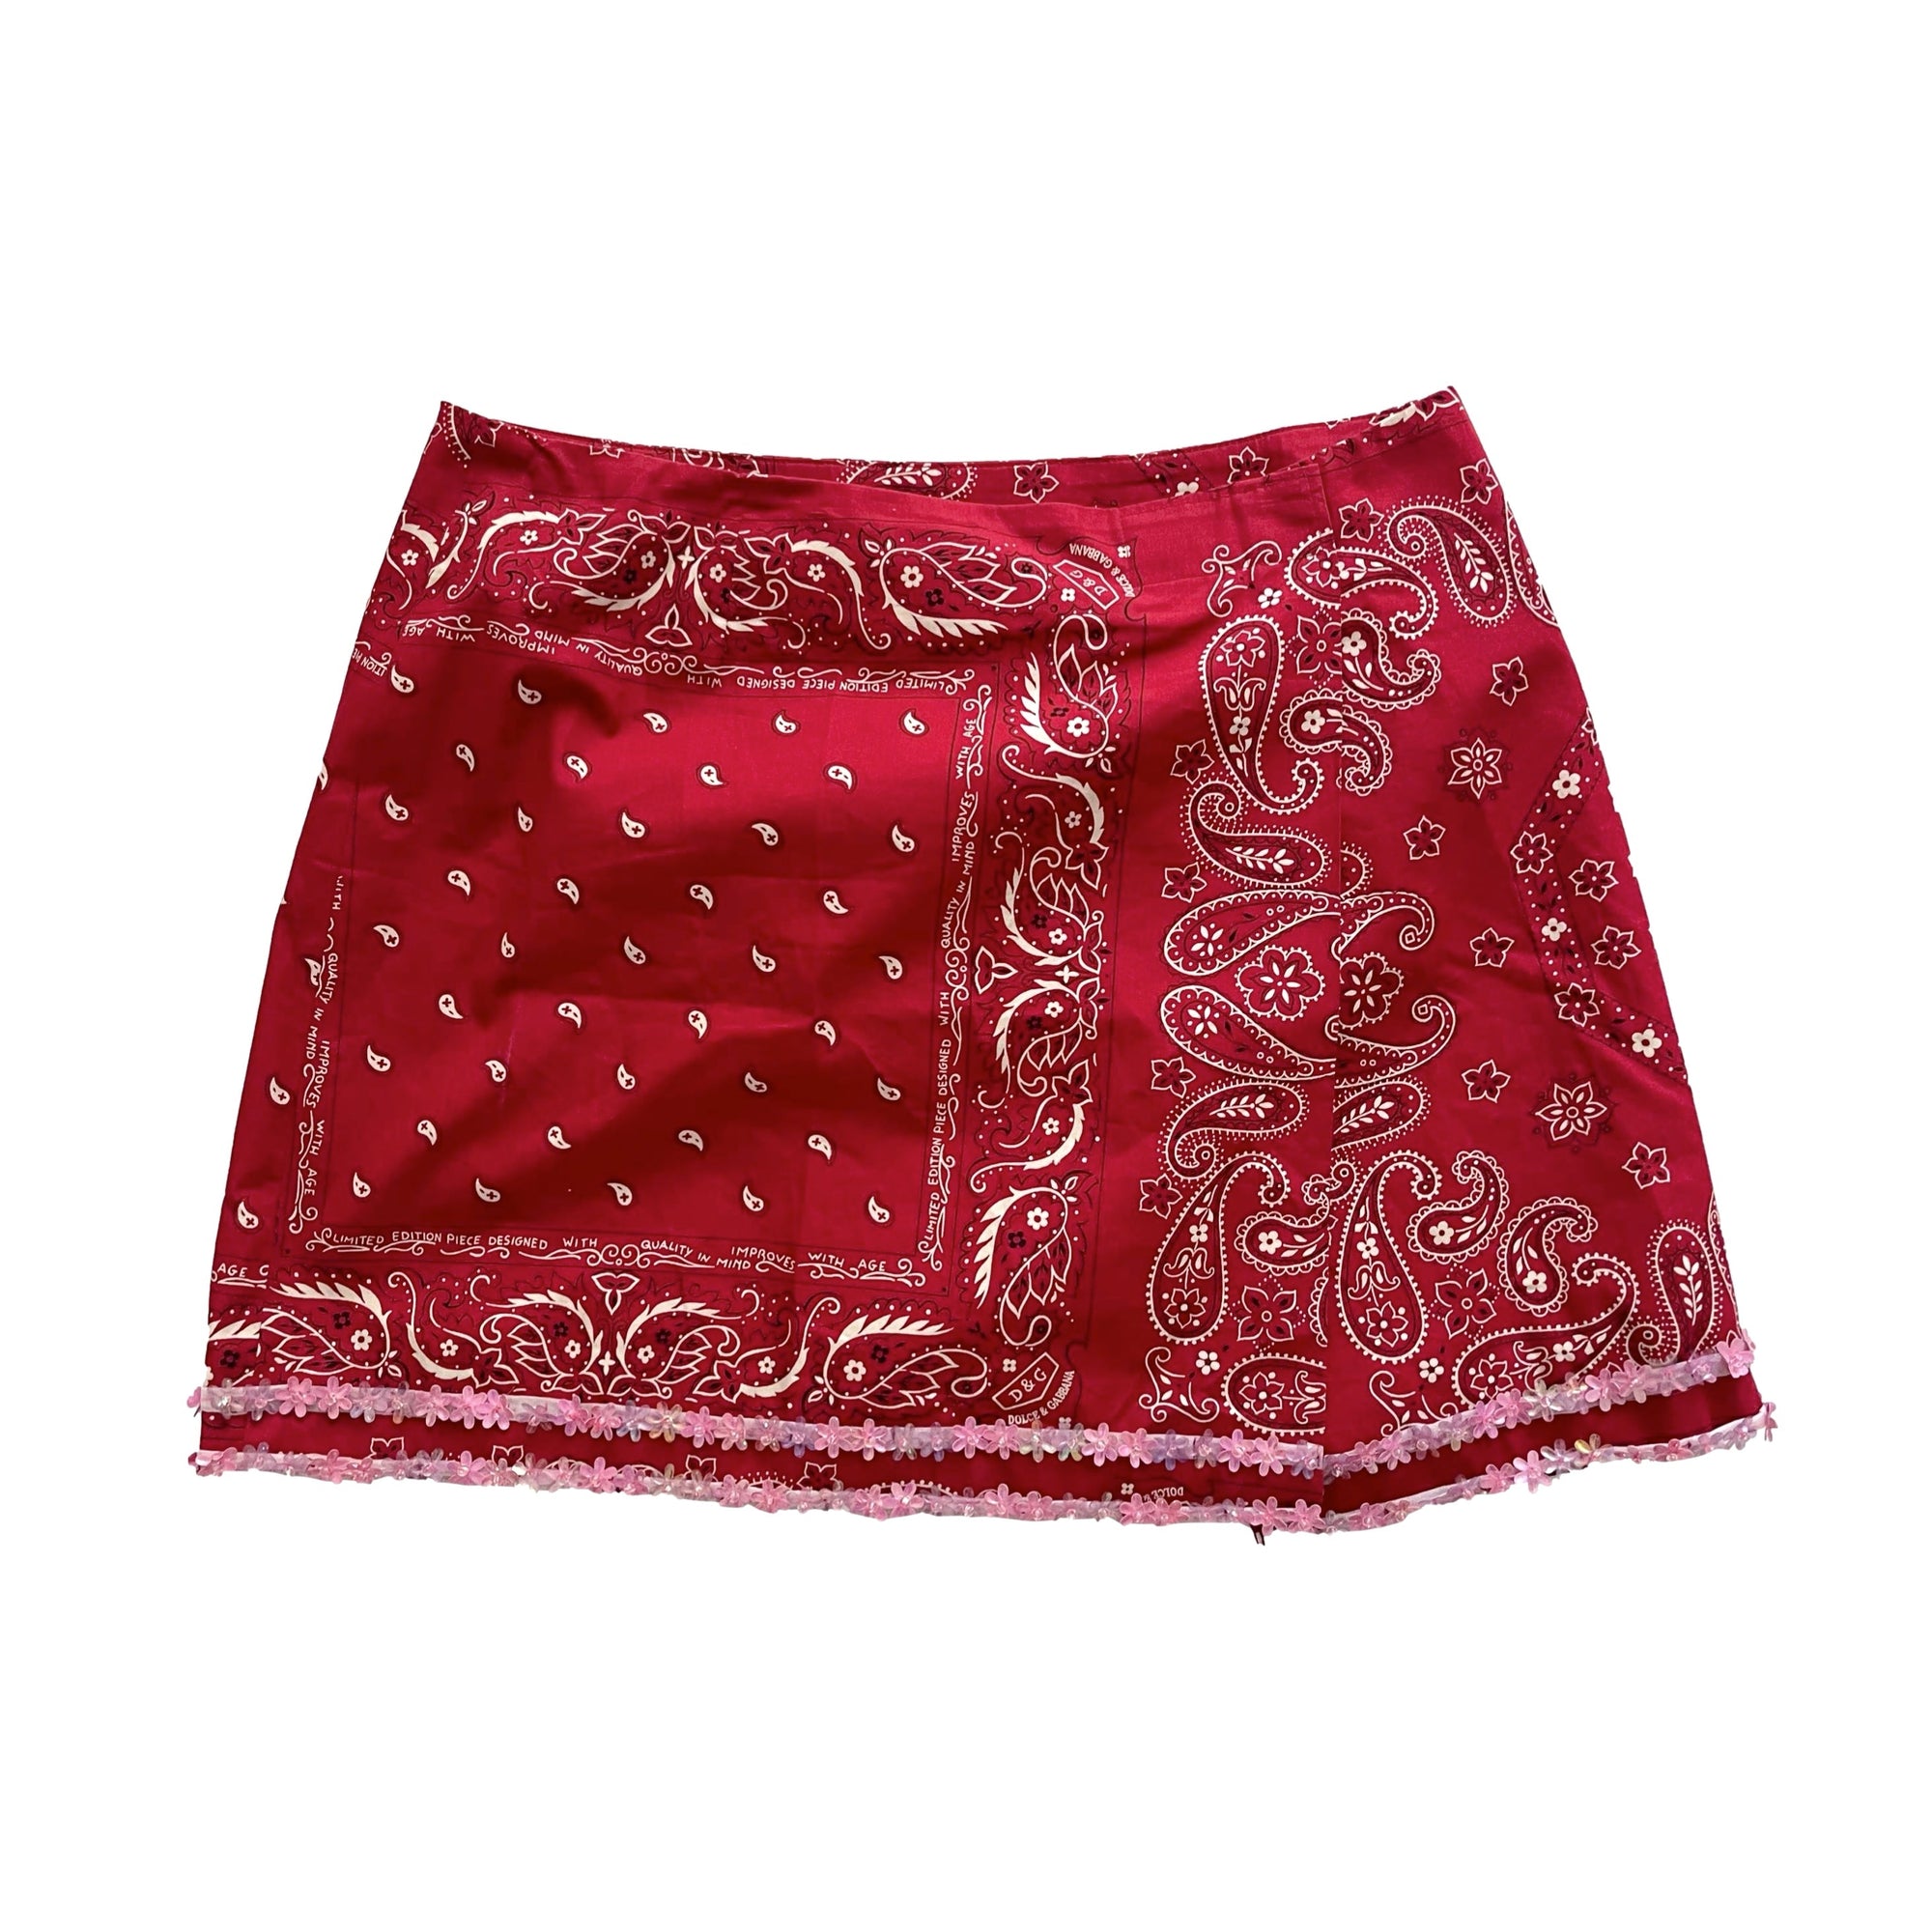 Dolce and Gabbana Bandana Print Skirt - Apparel